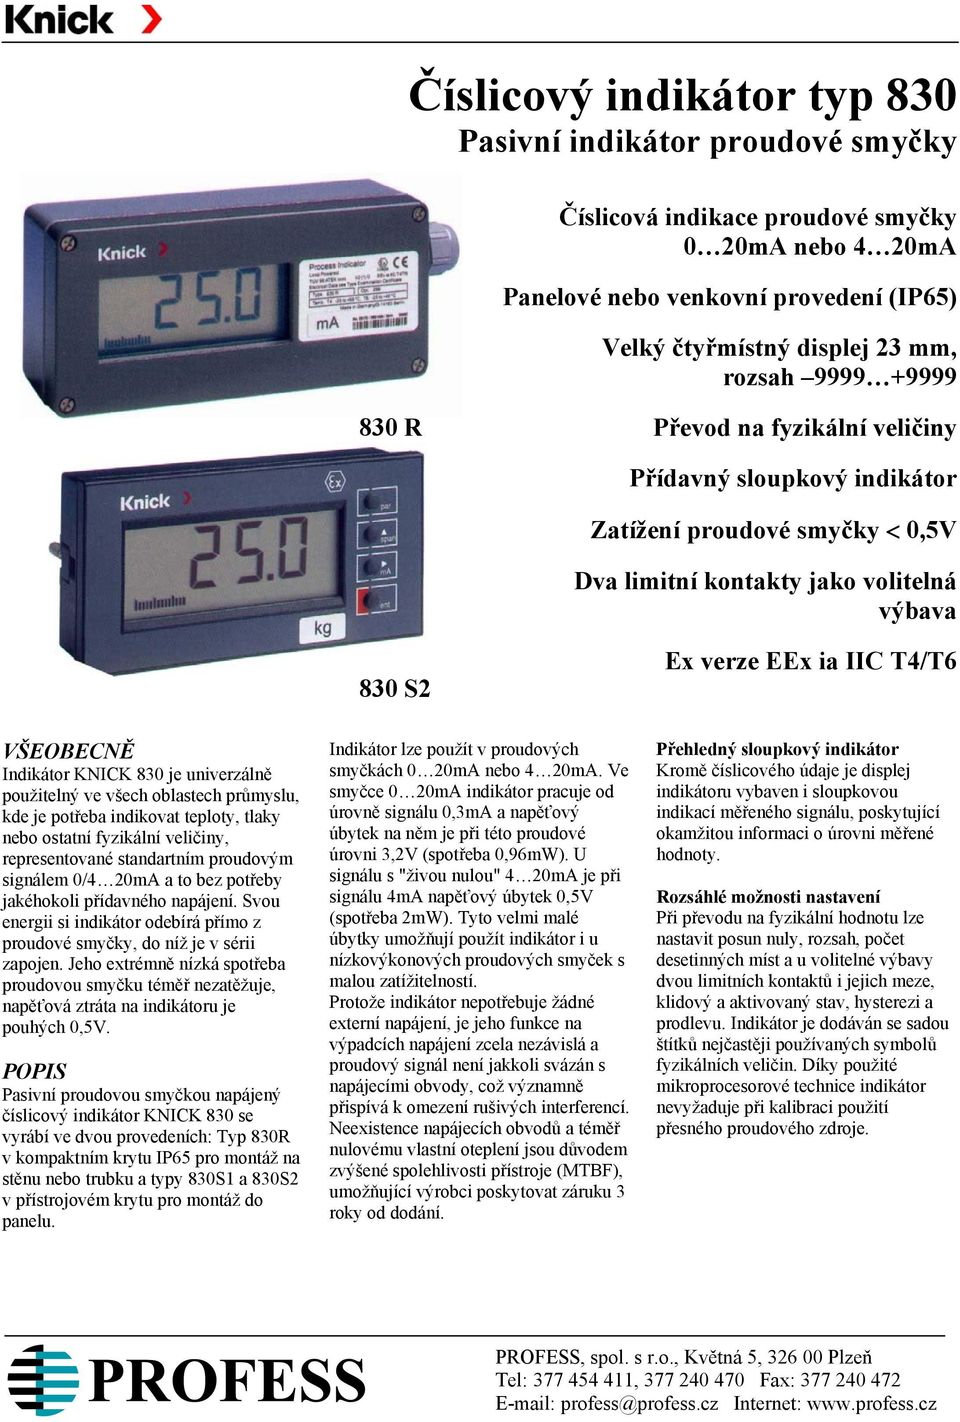 KNICK 830 je univerzálně použitelný ve všech oblastech průmyslu, kde je potřeba indikovat teploty, tlaky nebo ostatní fyzikální veličiny, representované standartním proudovým signálem 0/4 20mA a to